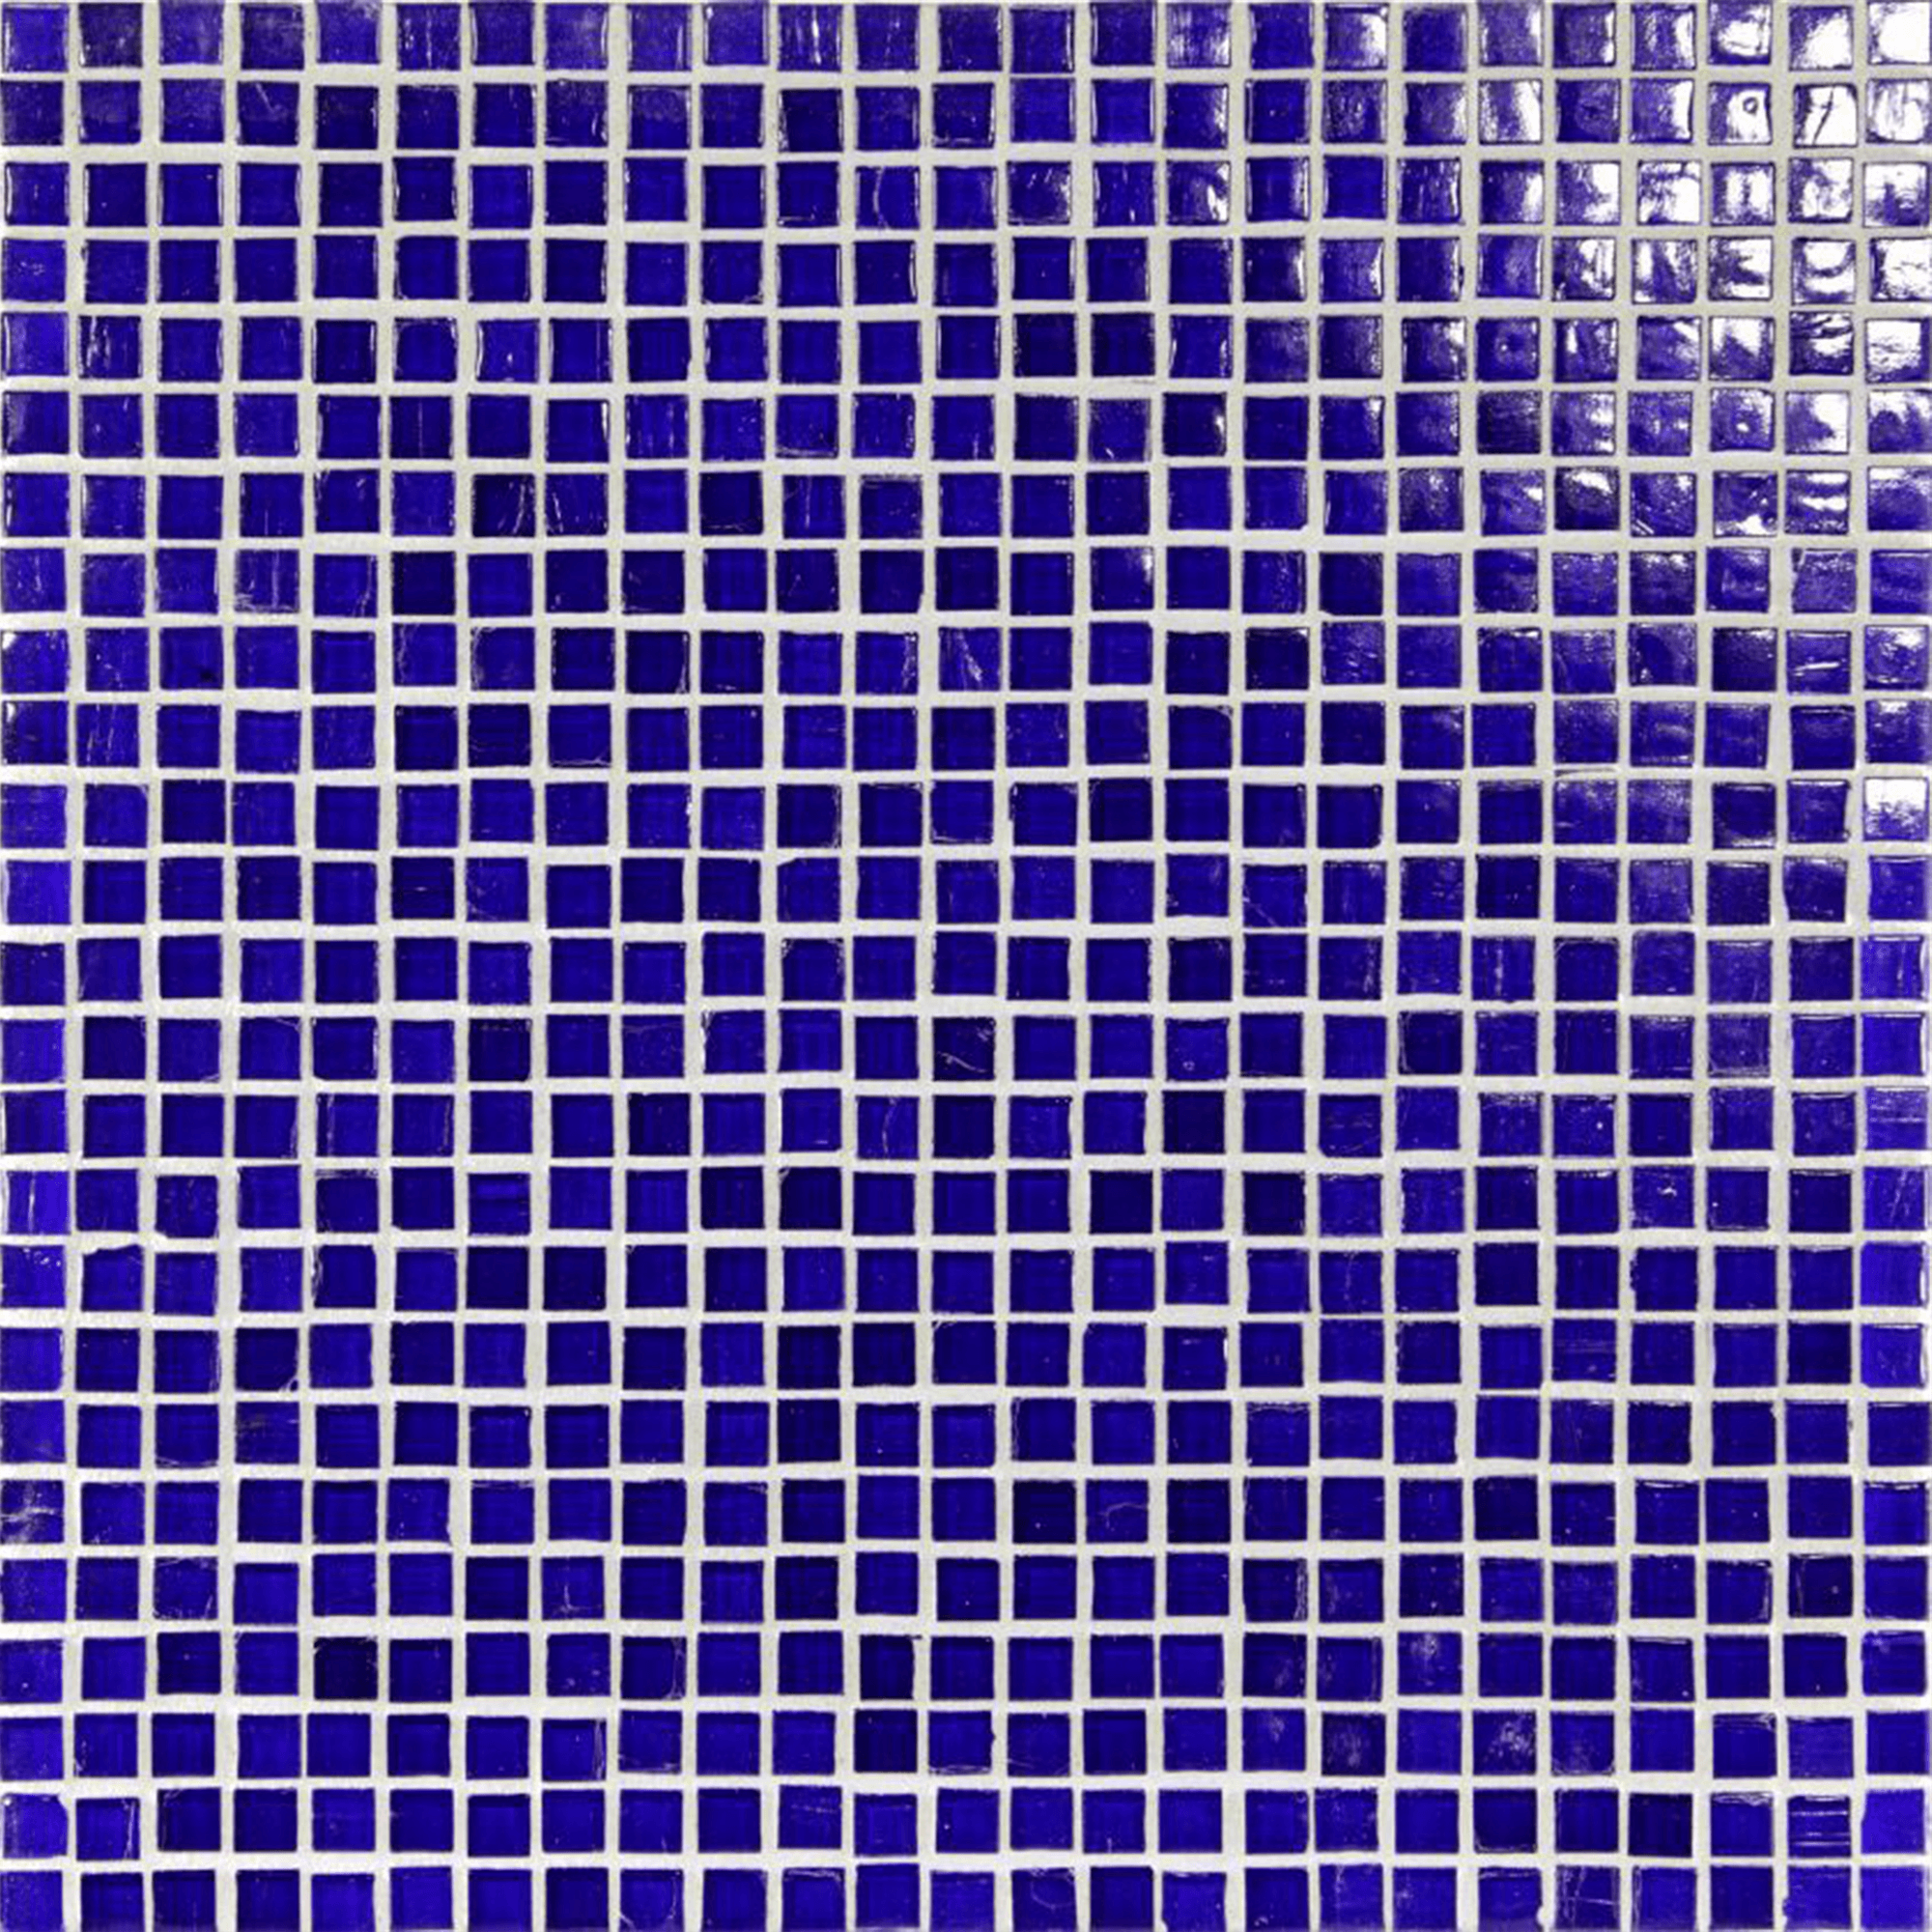 1/2x1/2 Mini Mosaic in Murano Blue - Ciao Bella